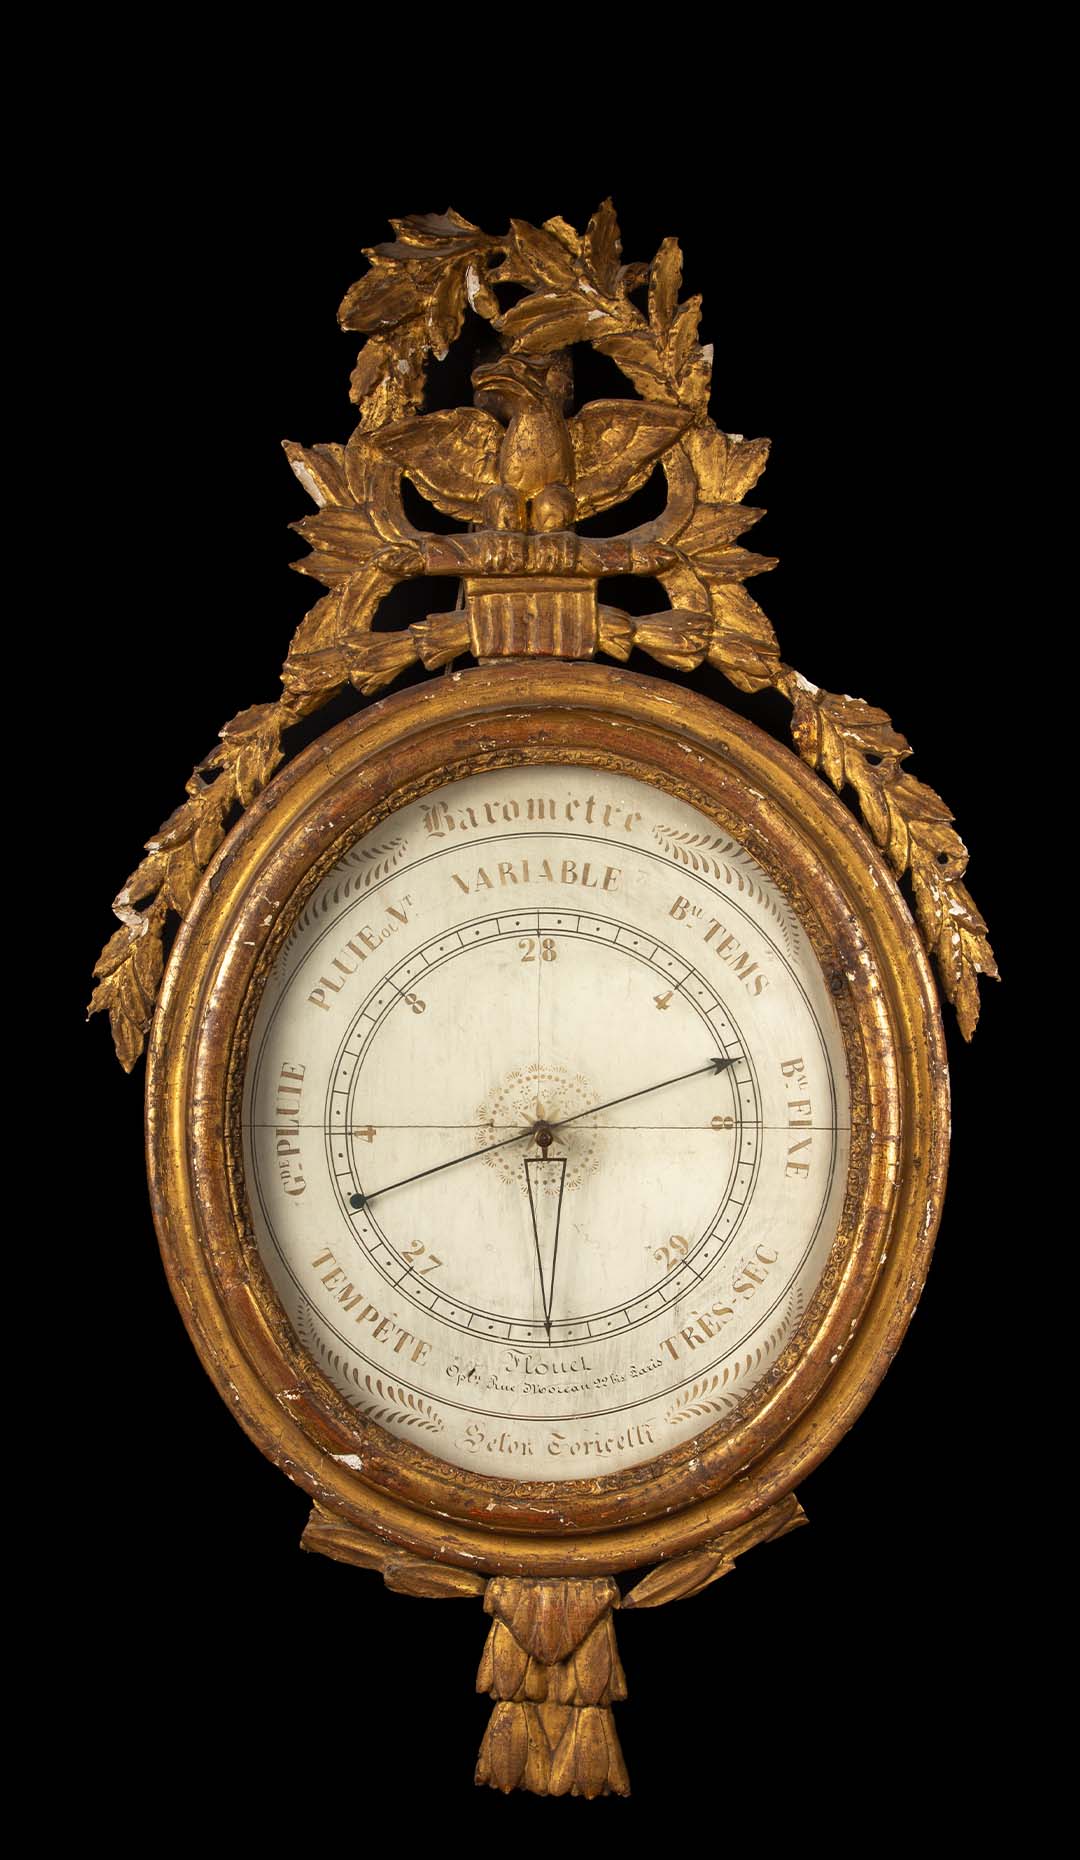 Exquisite 1800 Parisian Mercury Barometer: Elegance in Science